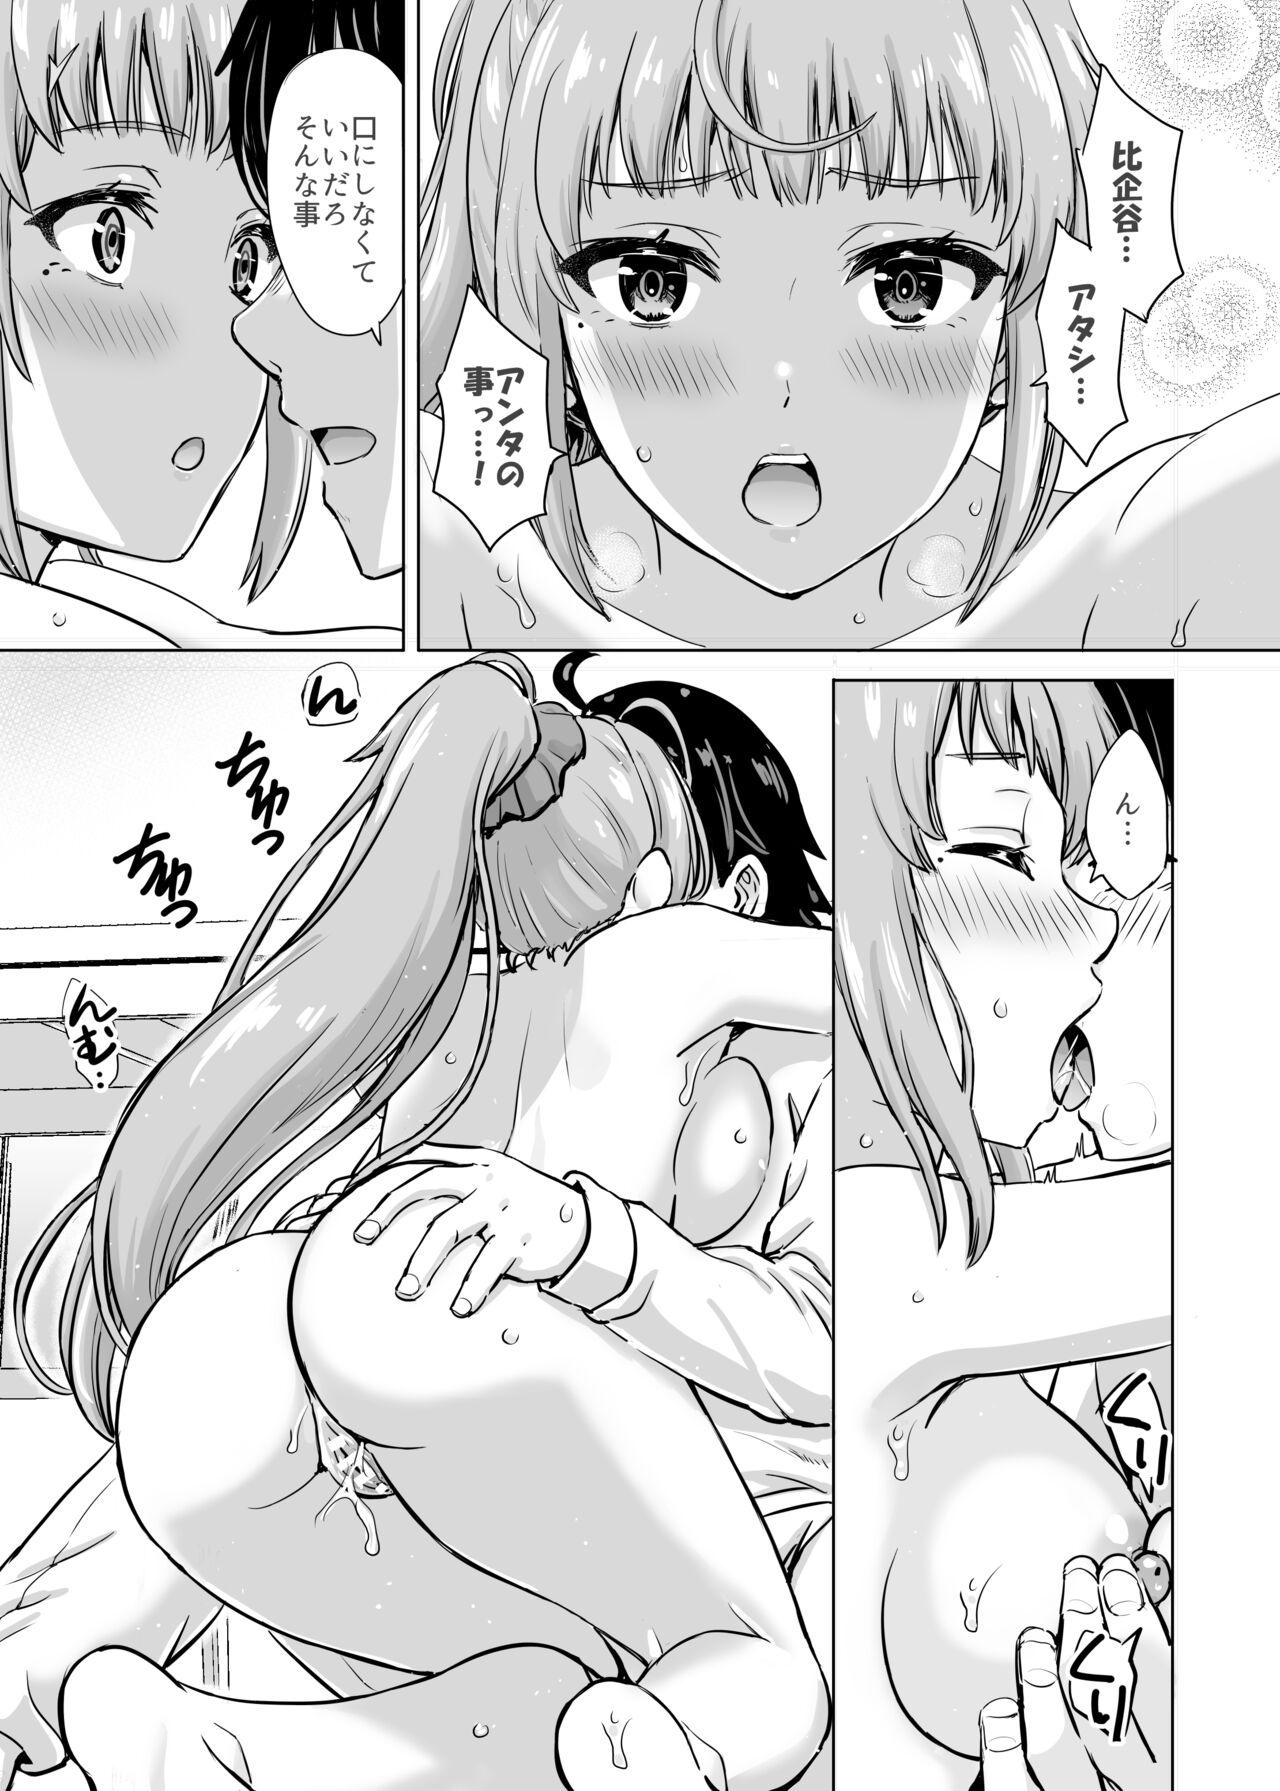 Gay Medical あーしさんサキサキ漫画 - Yahari ore no seishun love come wa machigatteiru Gay Pov - Page 10